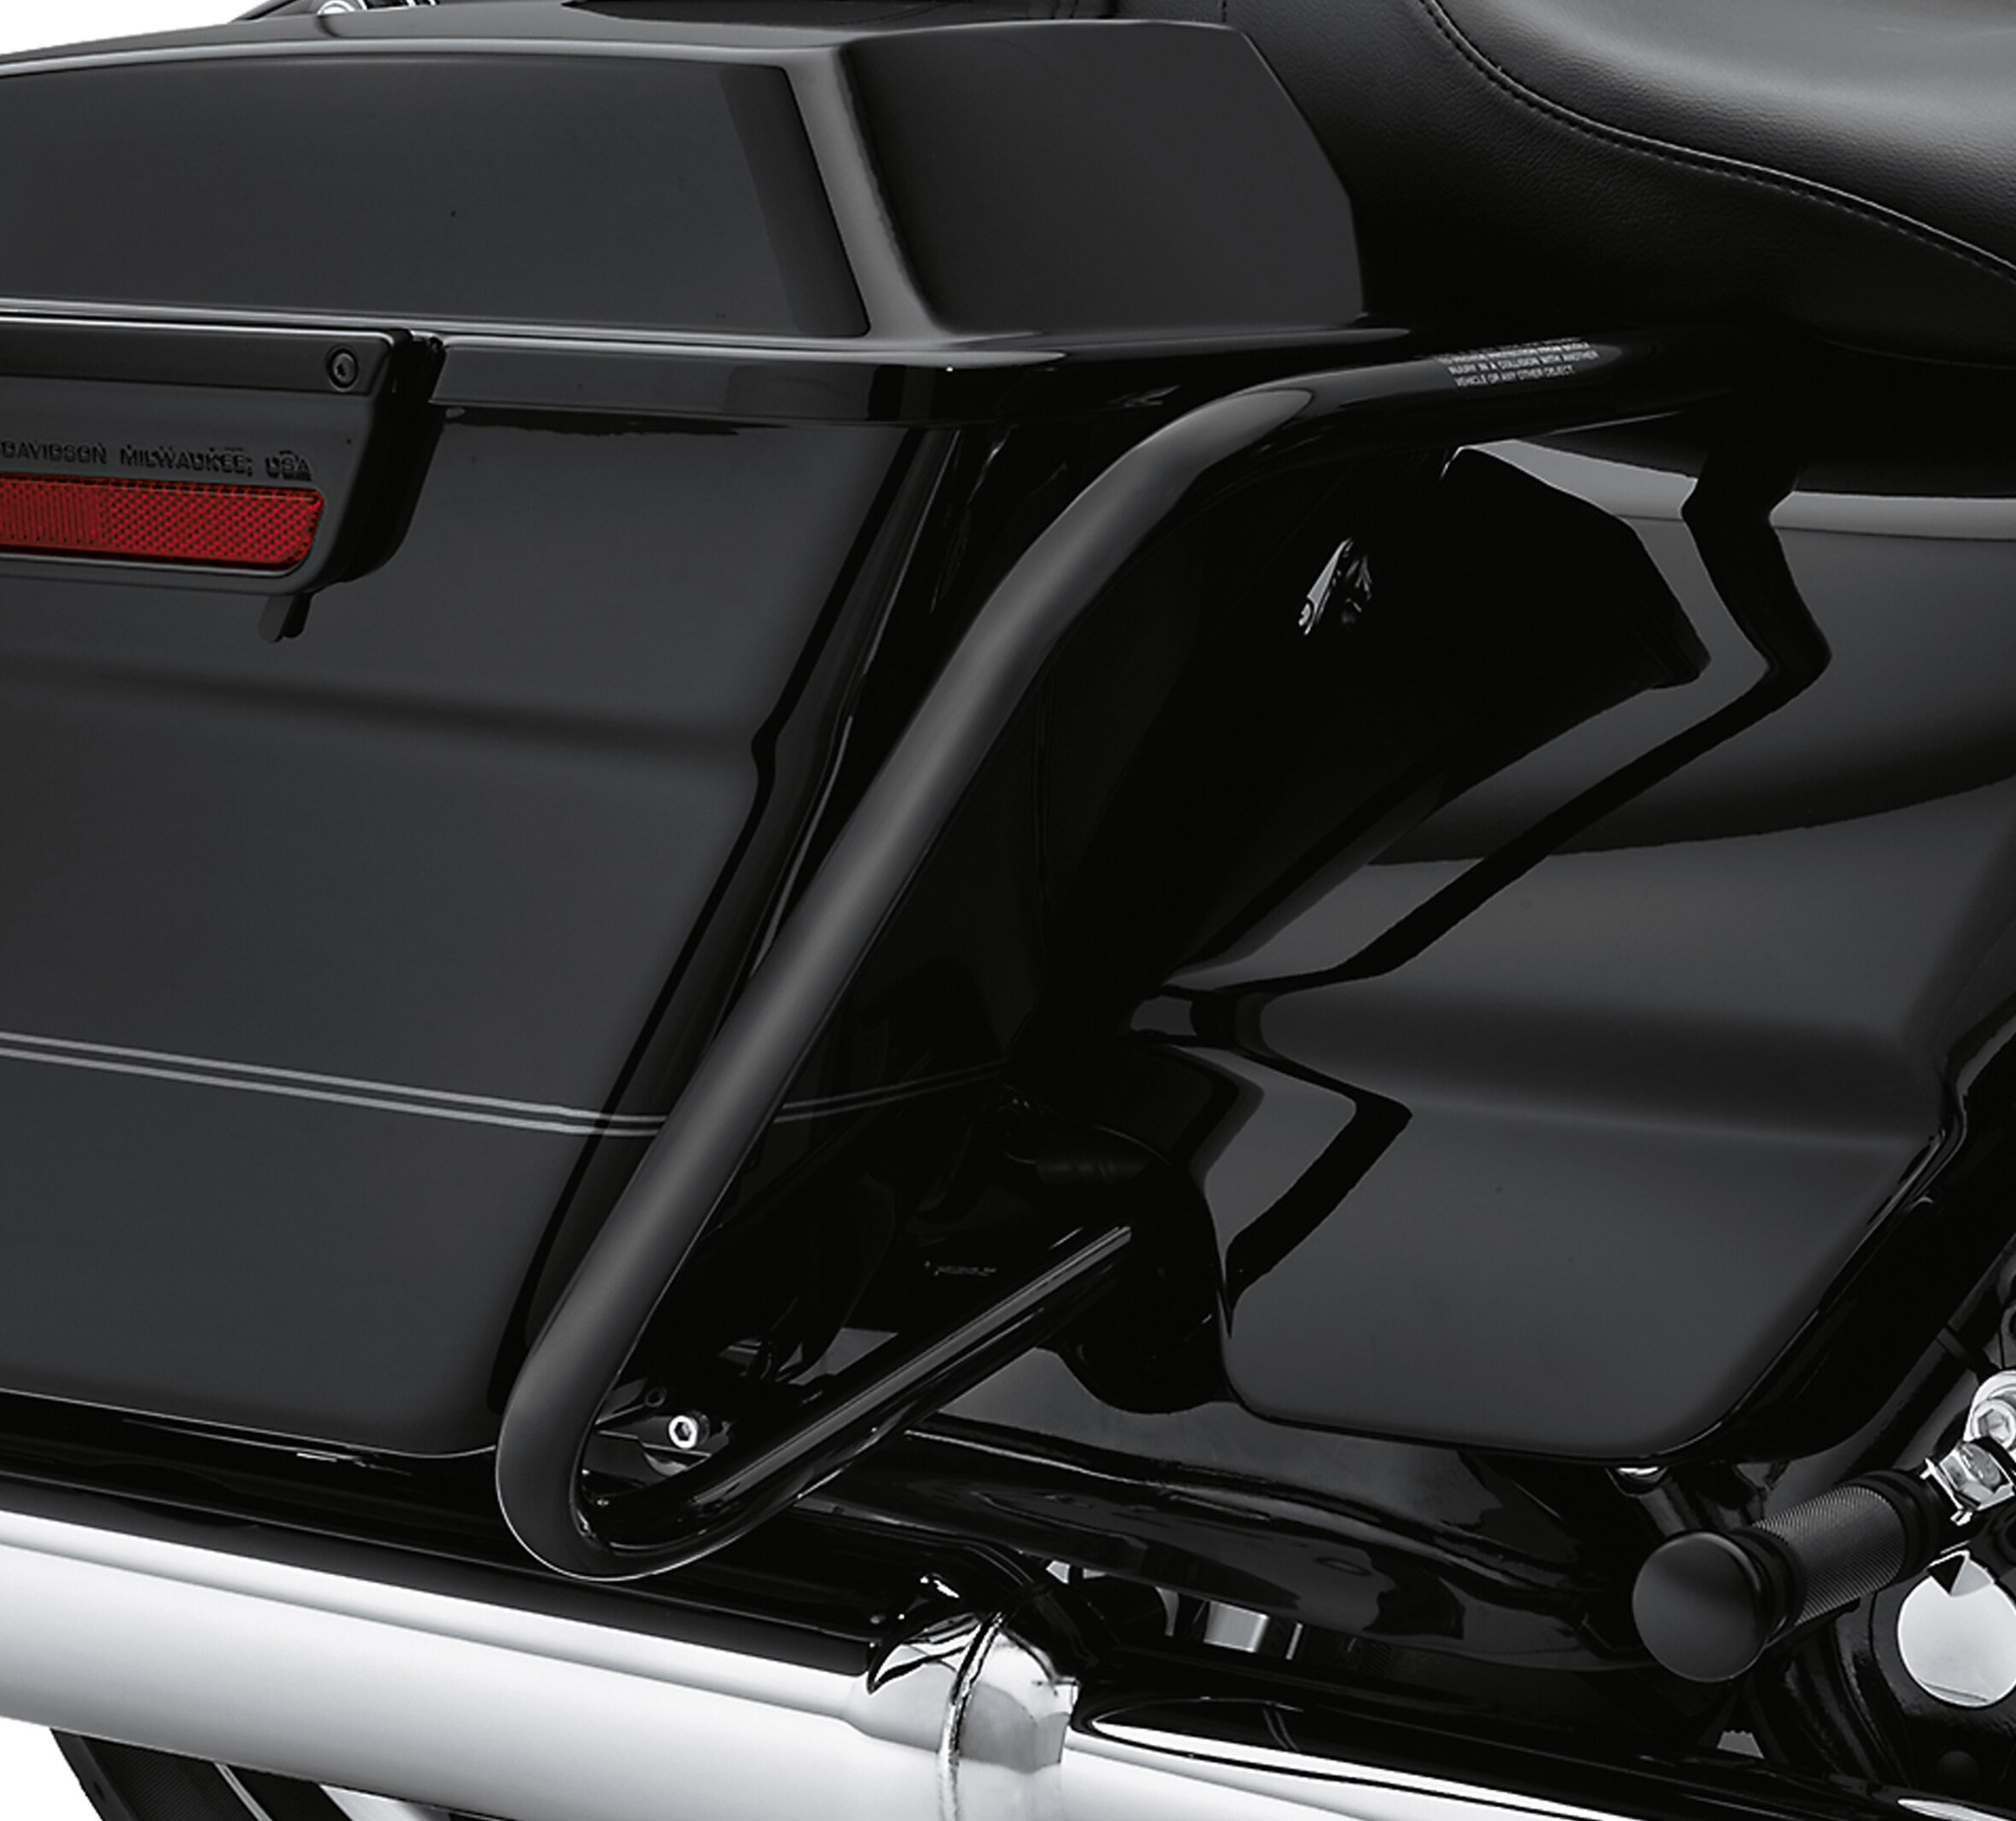 Gloss Black Rear Saddlebag Guard Kit 49283-09 | Harley-Davidson USA